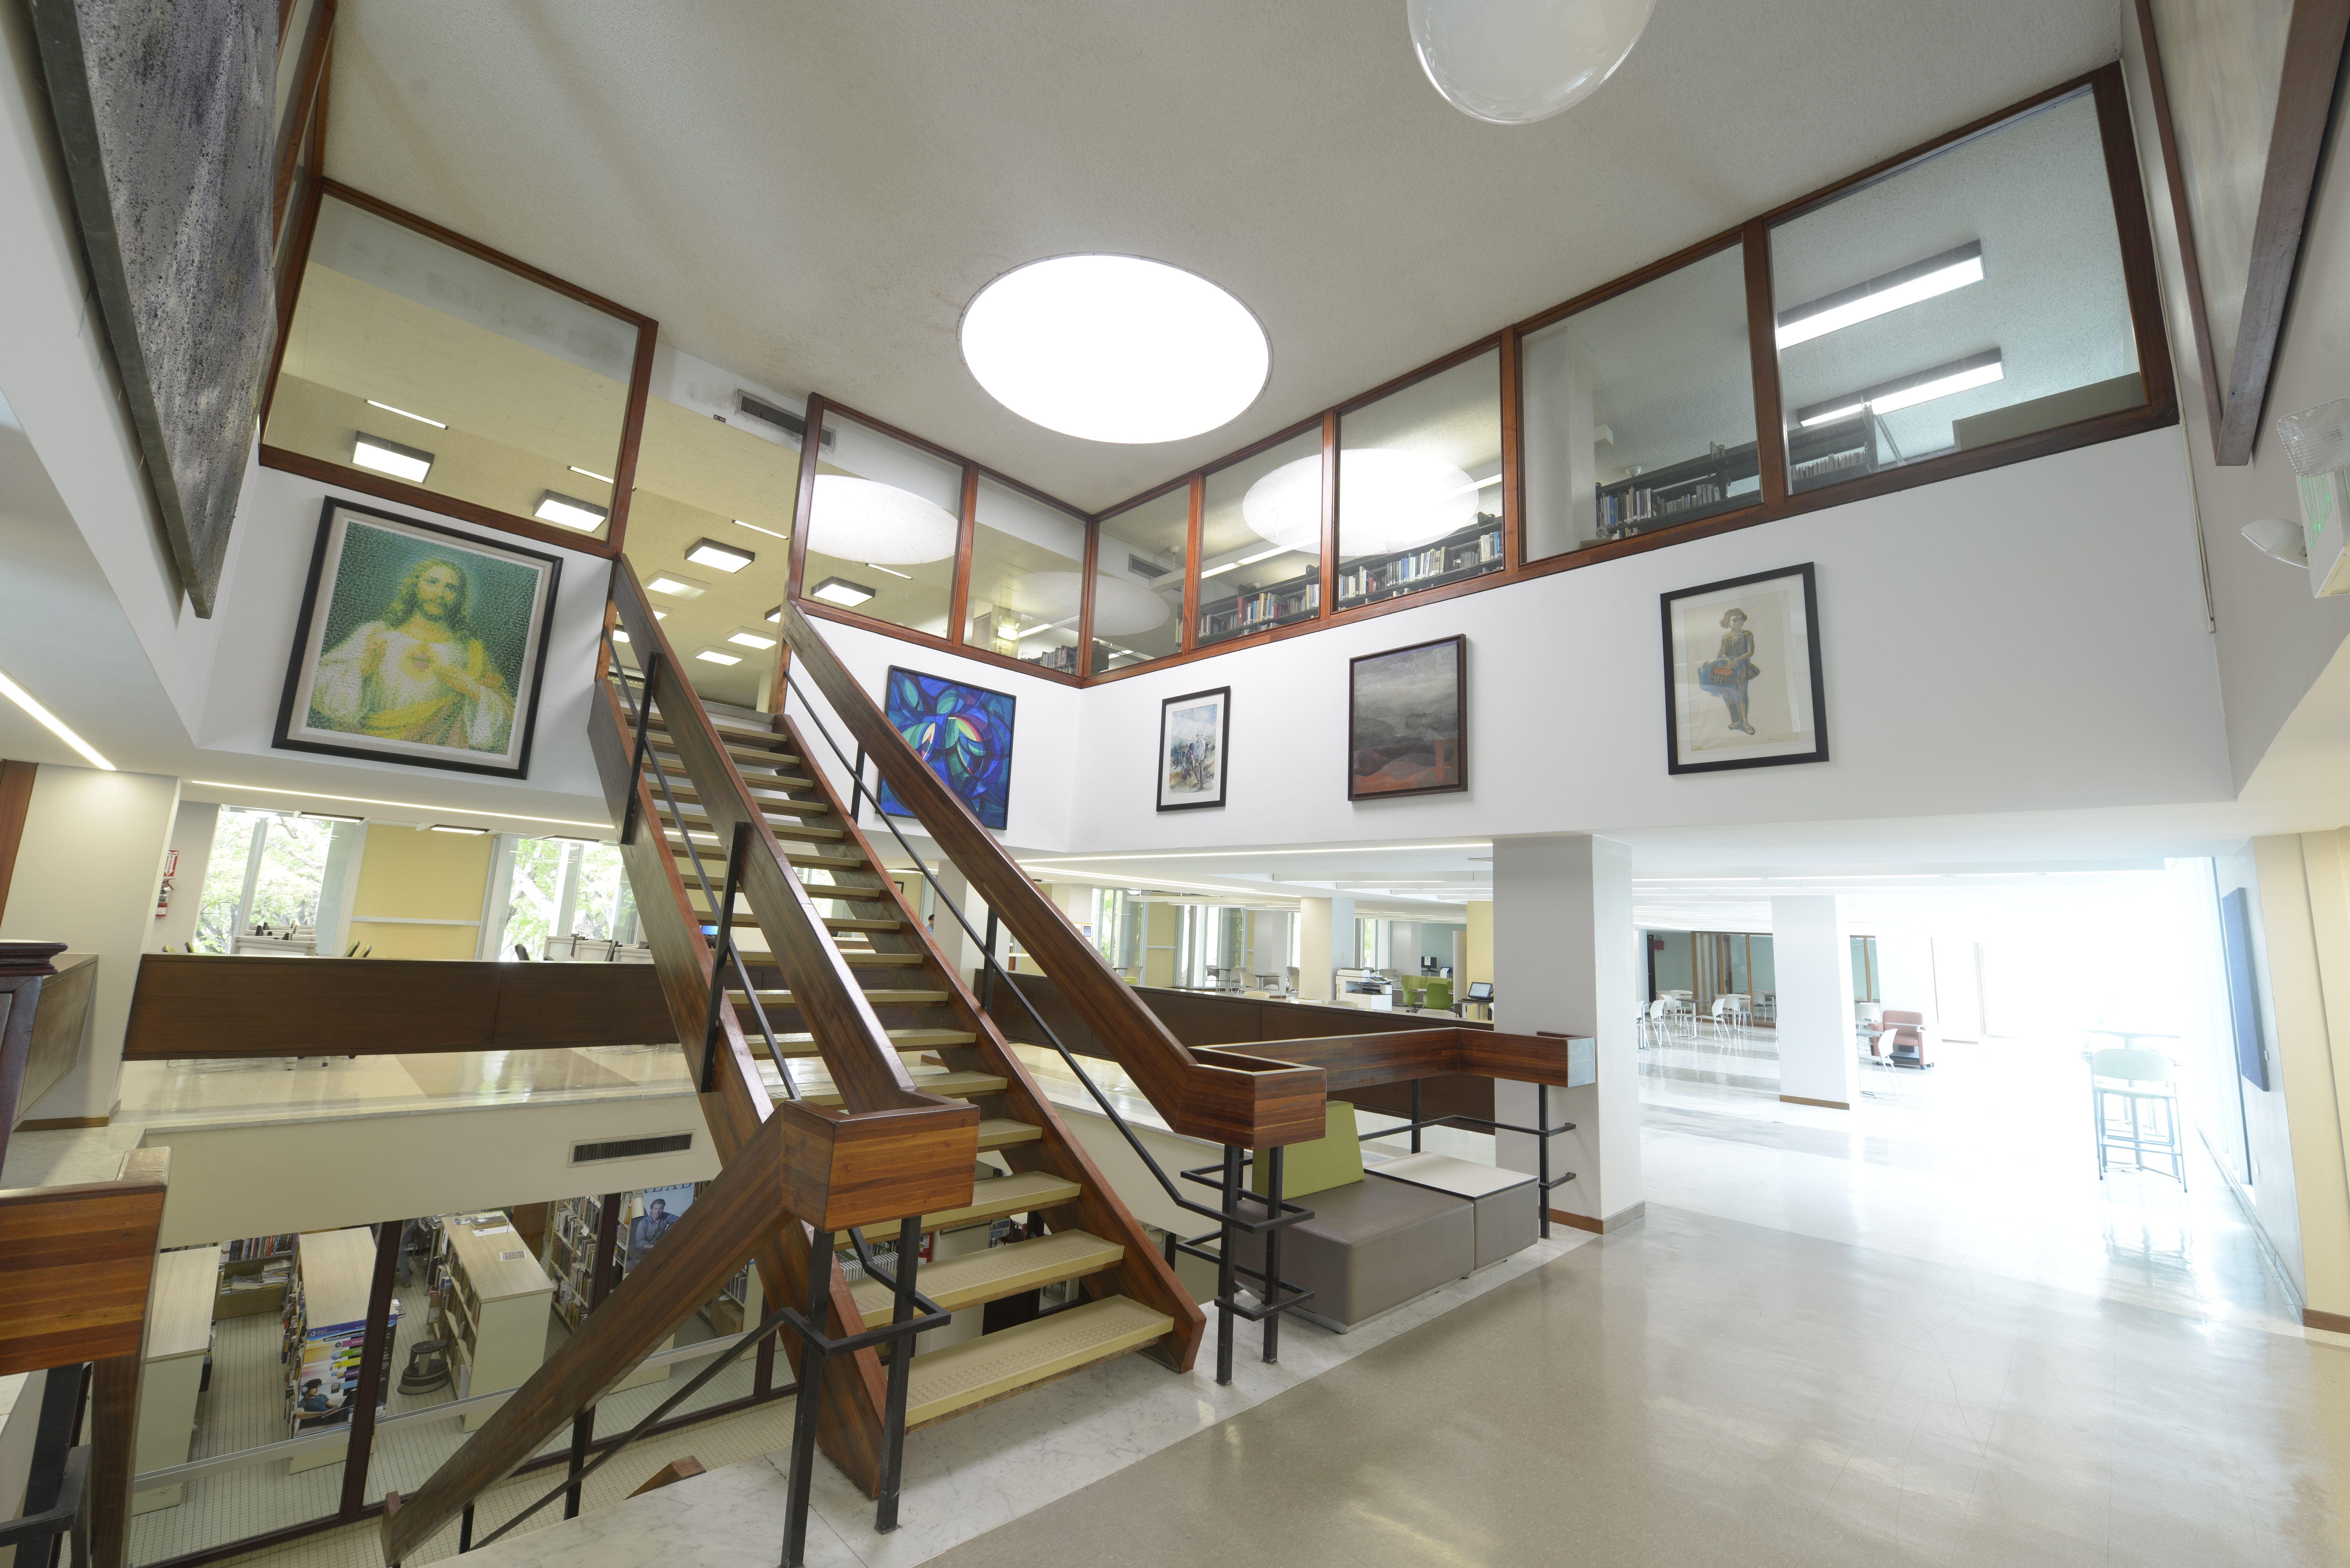 Fotografia del area de coleccion general desde una toma hacia su entrada, escaleras y anaqueles de libros